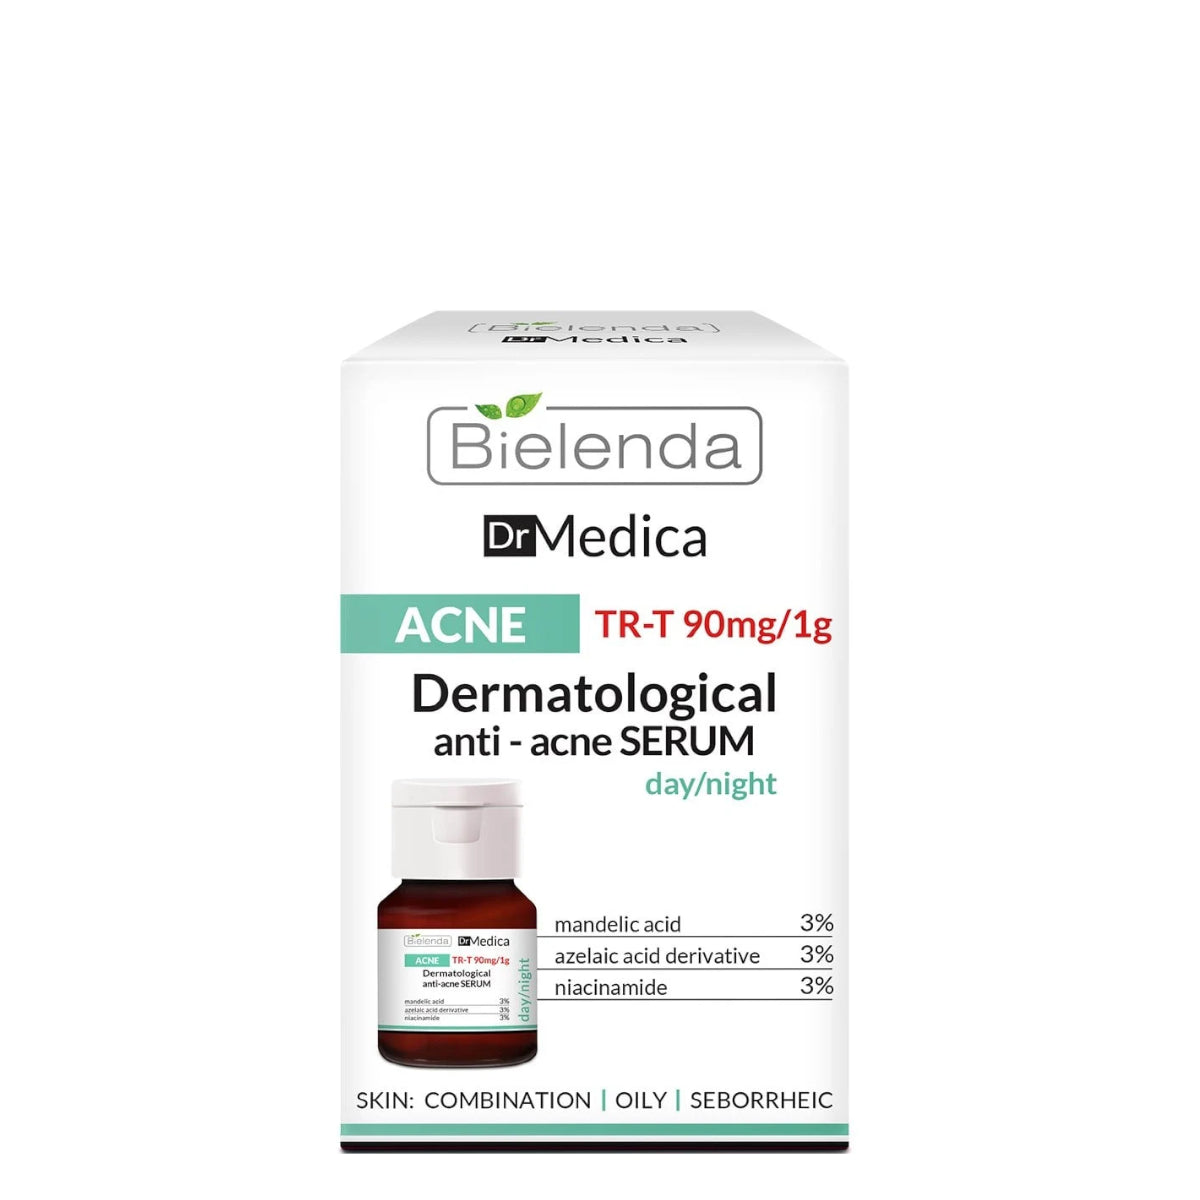 Bielenda Dr Medica Dermatological Anti-Acne Face Serum 30ml